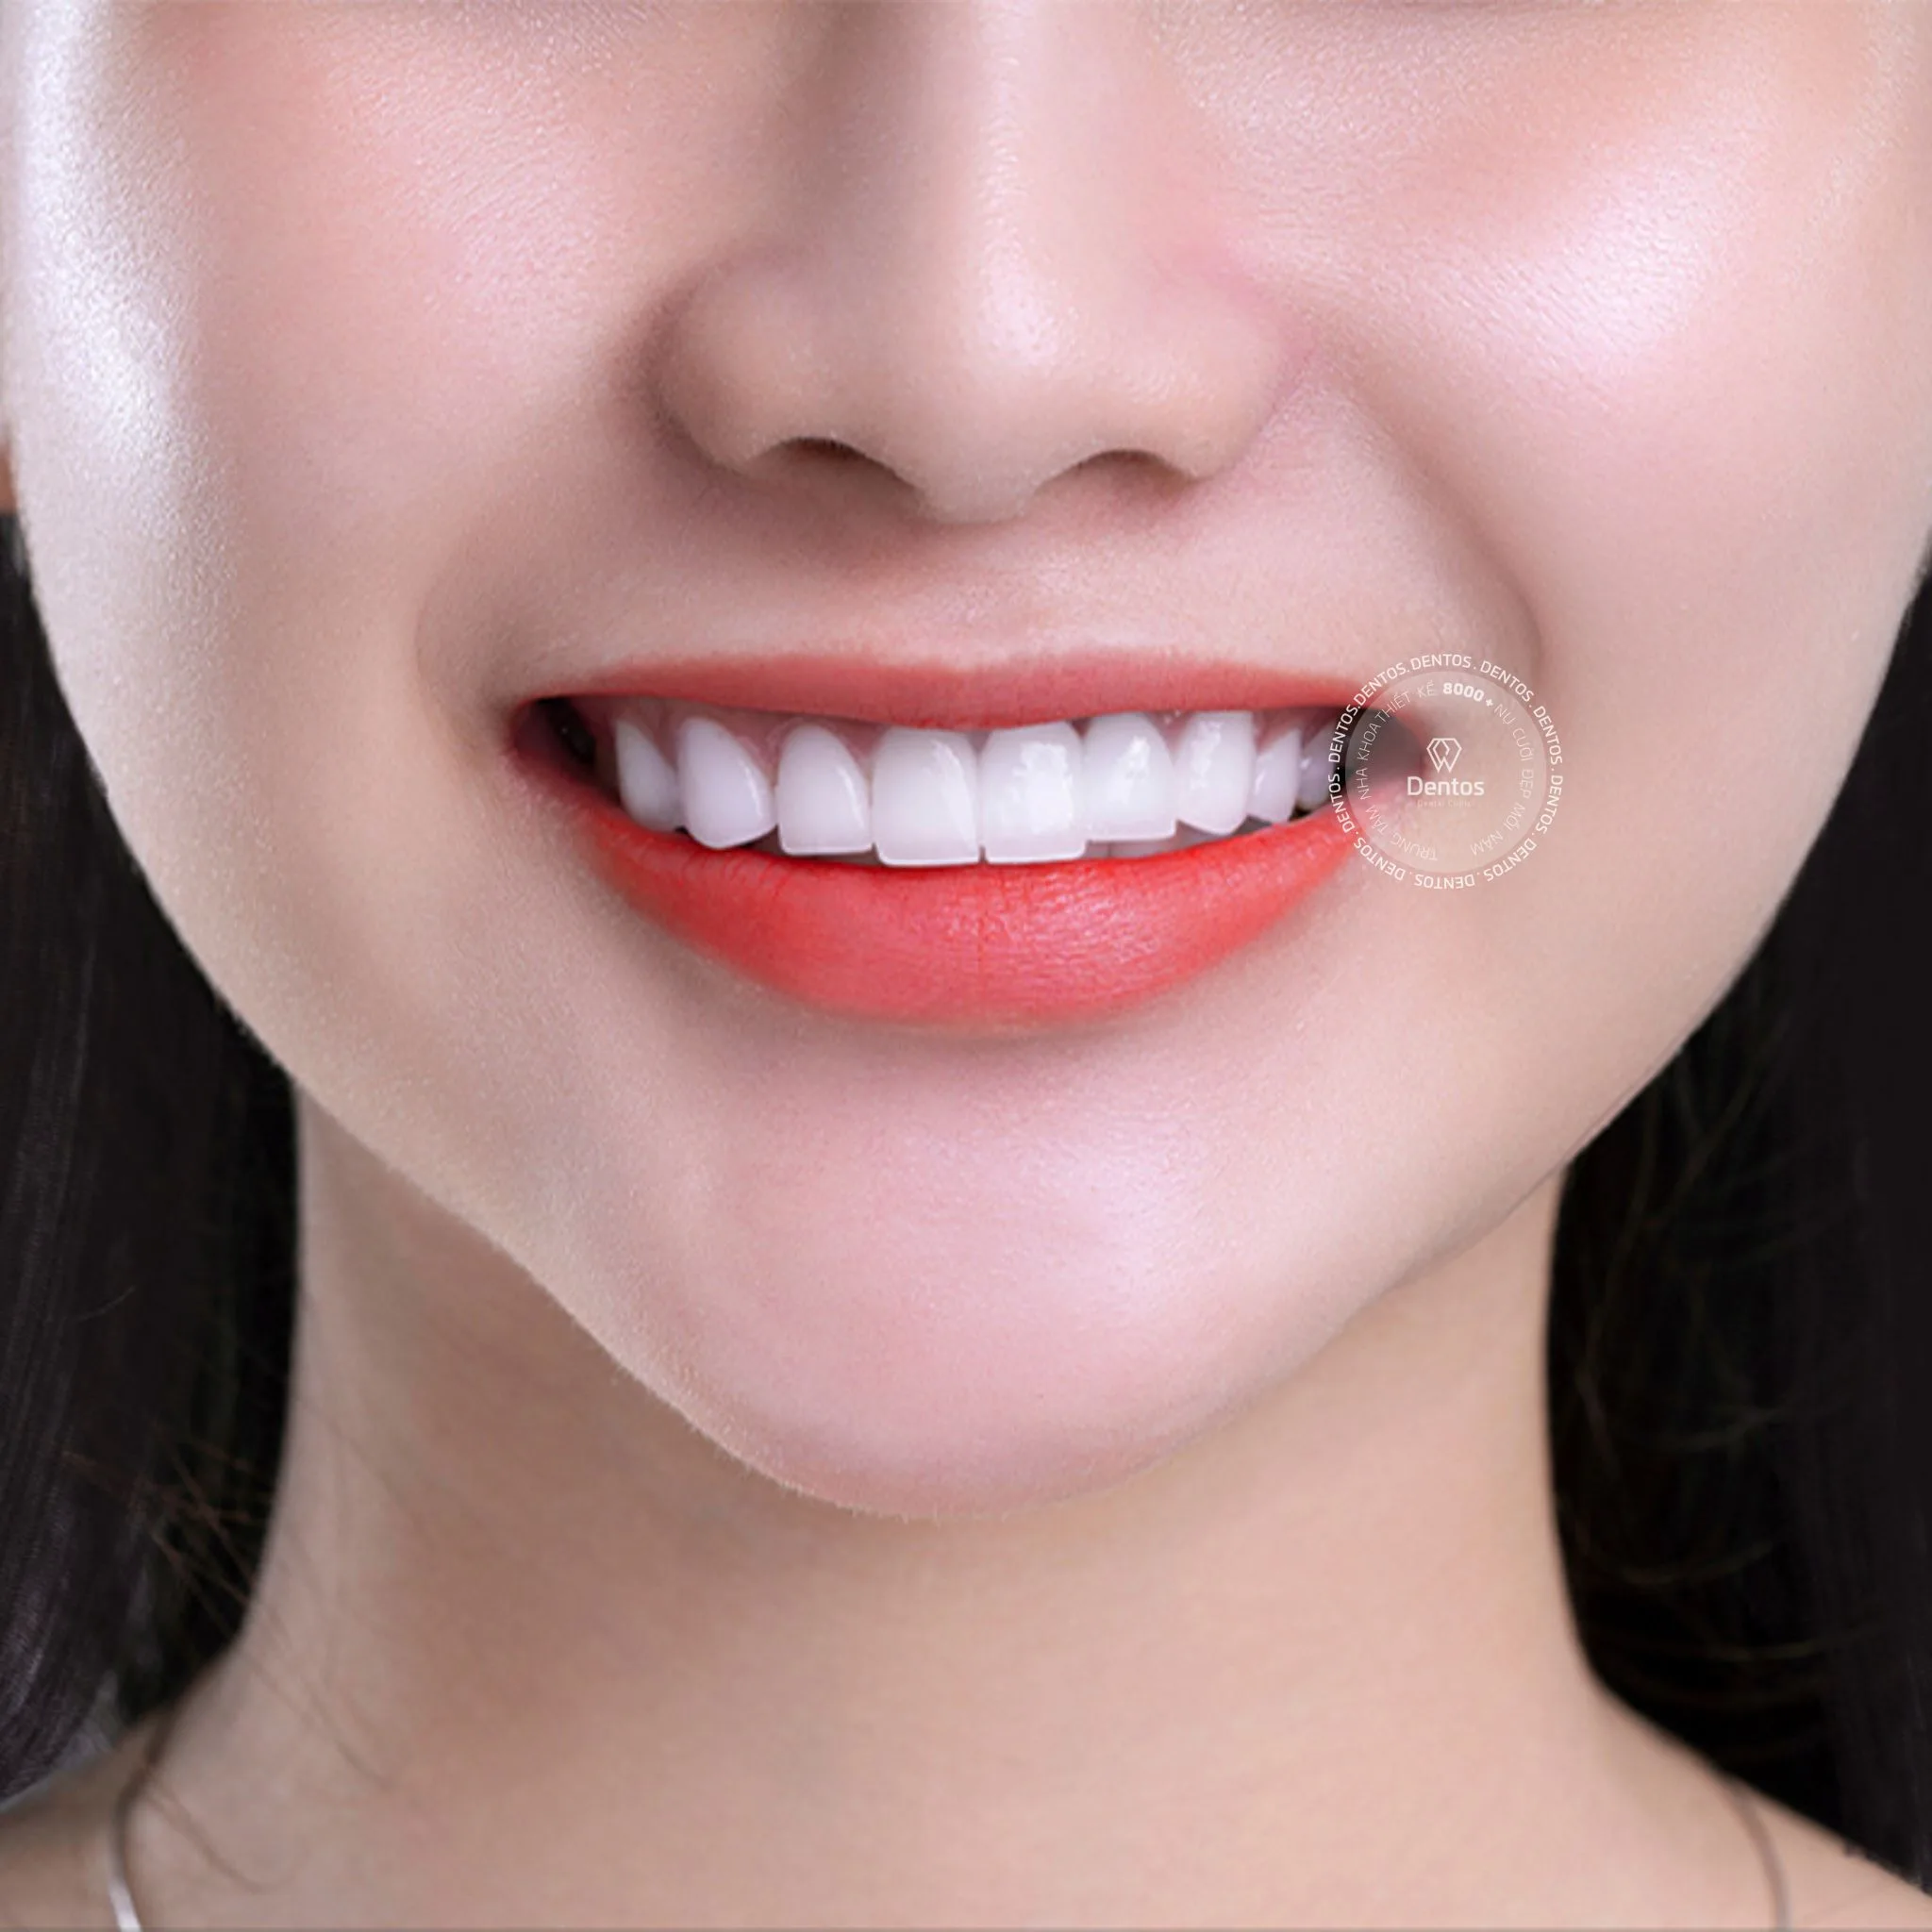 Răng sứ Zirconia có màu sắc rất giống răng thật, tự nhiên